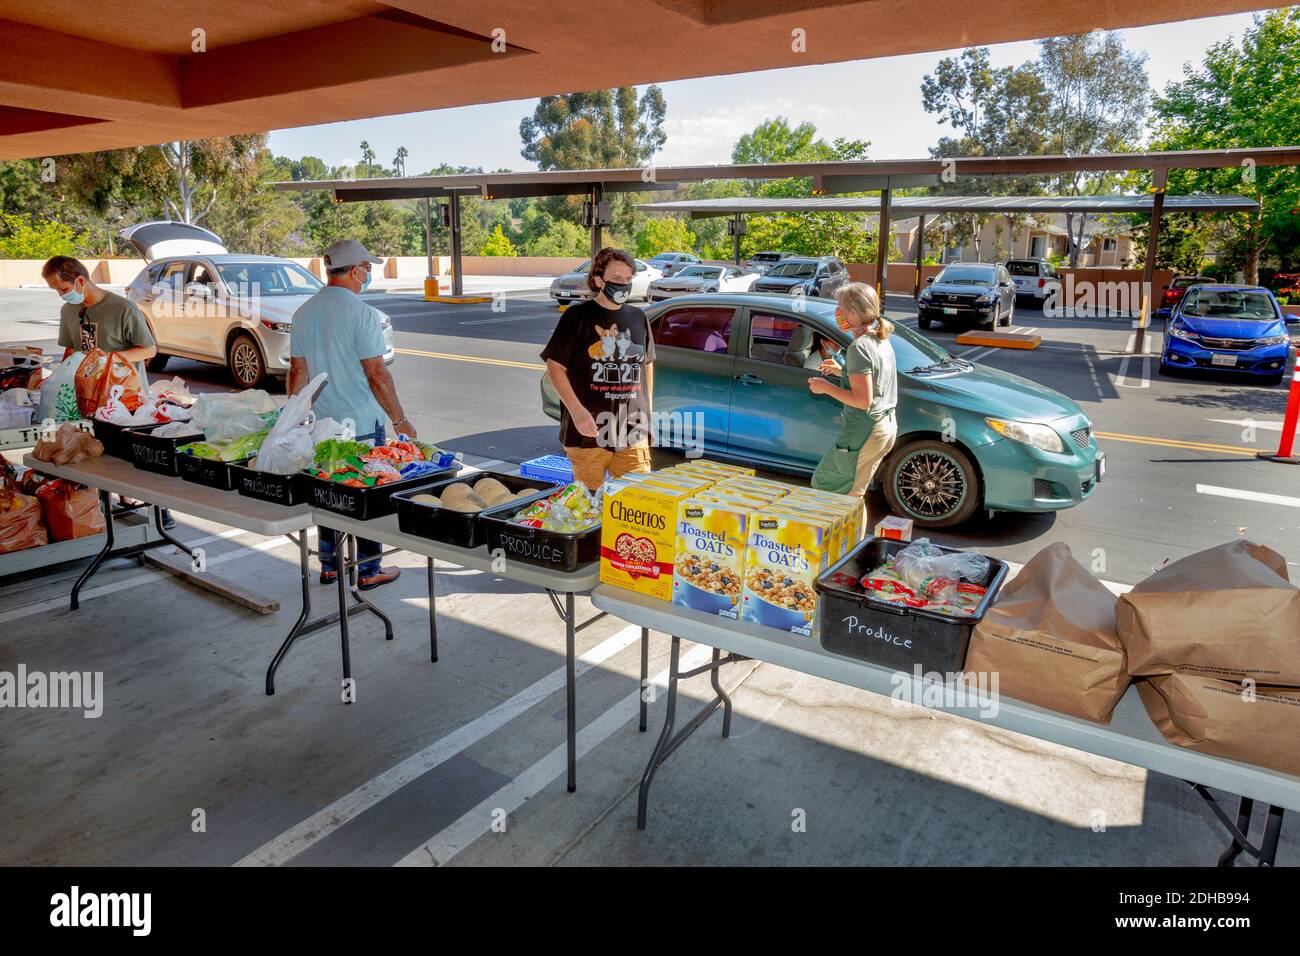 Eine Wohltätigkeitsküche in einer katholischen Kirche in Südkalifornien liefert Nahrung für bedürftige Menschen mit Drive-Through-Verteilung. Beachten Sie Masken aufgrund der Coronavirus-Pandemie. Stockfoto